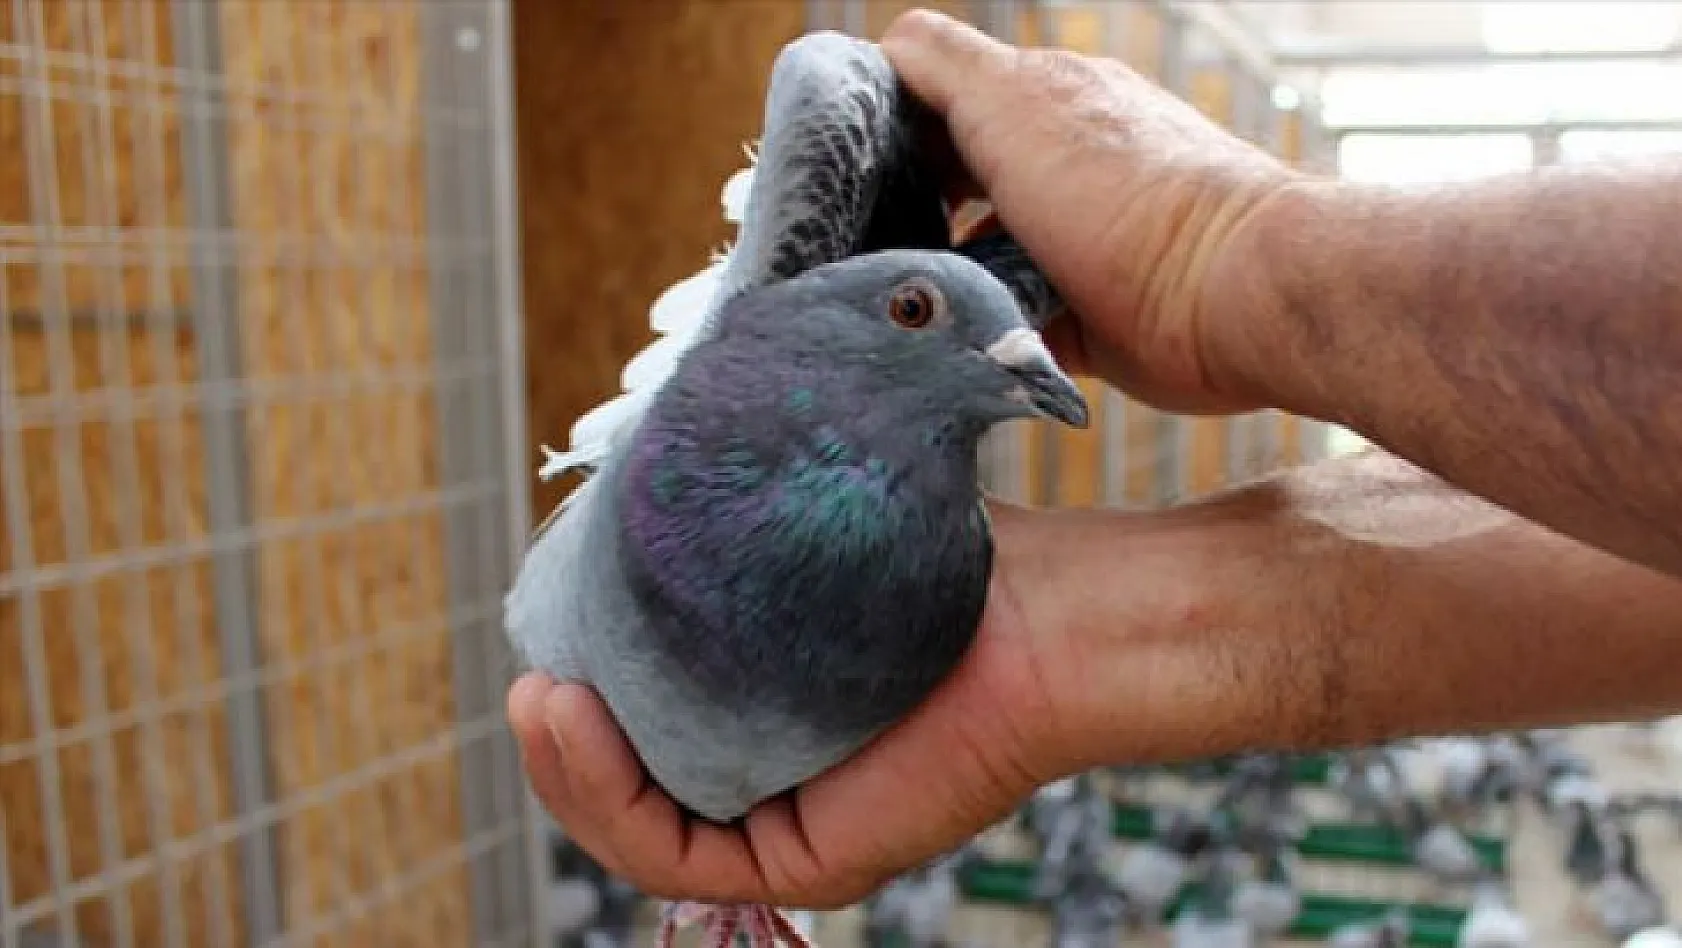 Posta güvercinleri 'bilinçsiz avcılık' kurbanı